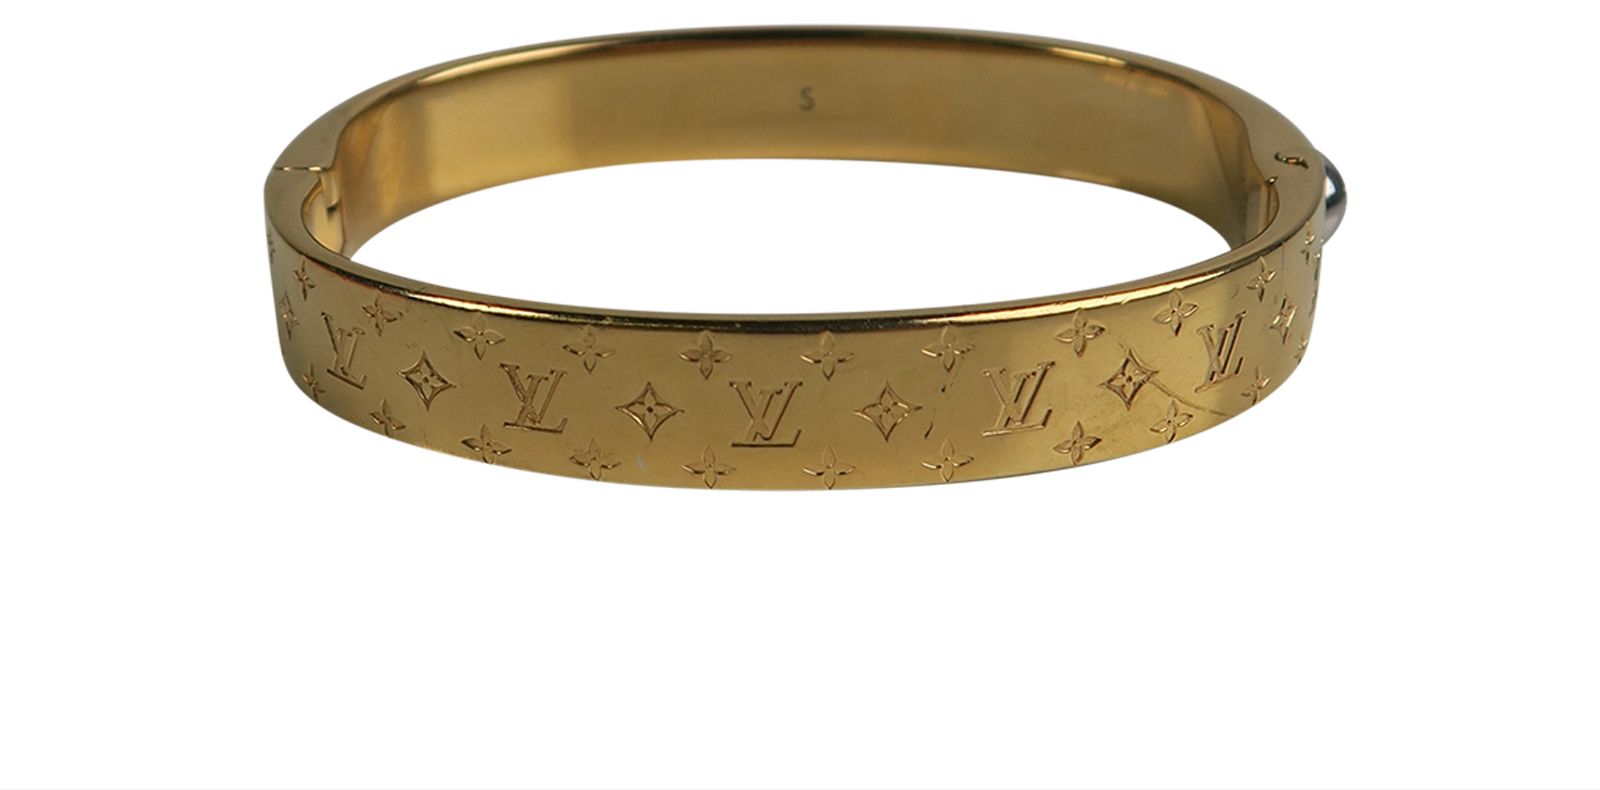 Louis Vuitton Nanogram Bracelet  Rent Louis Vuitton jewelry for